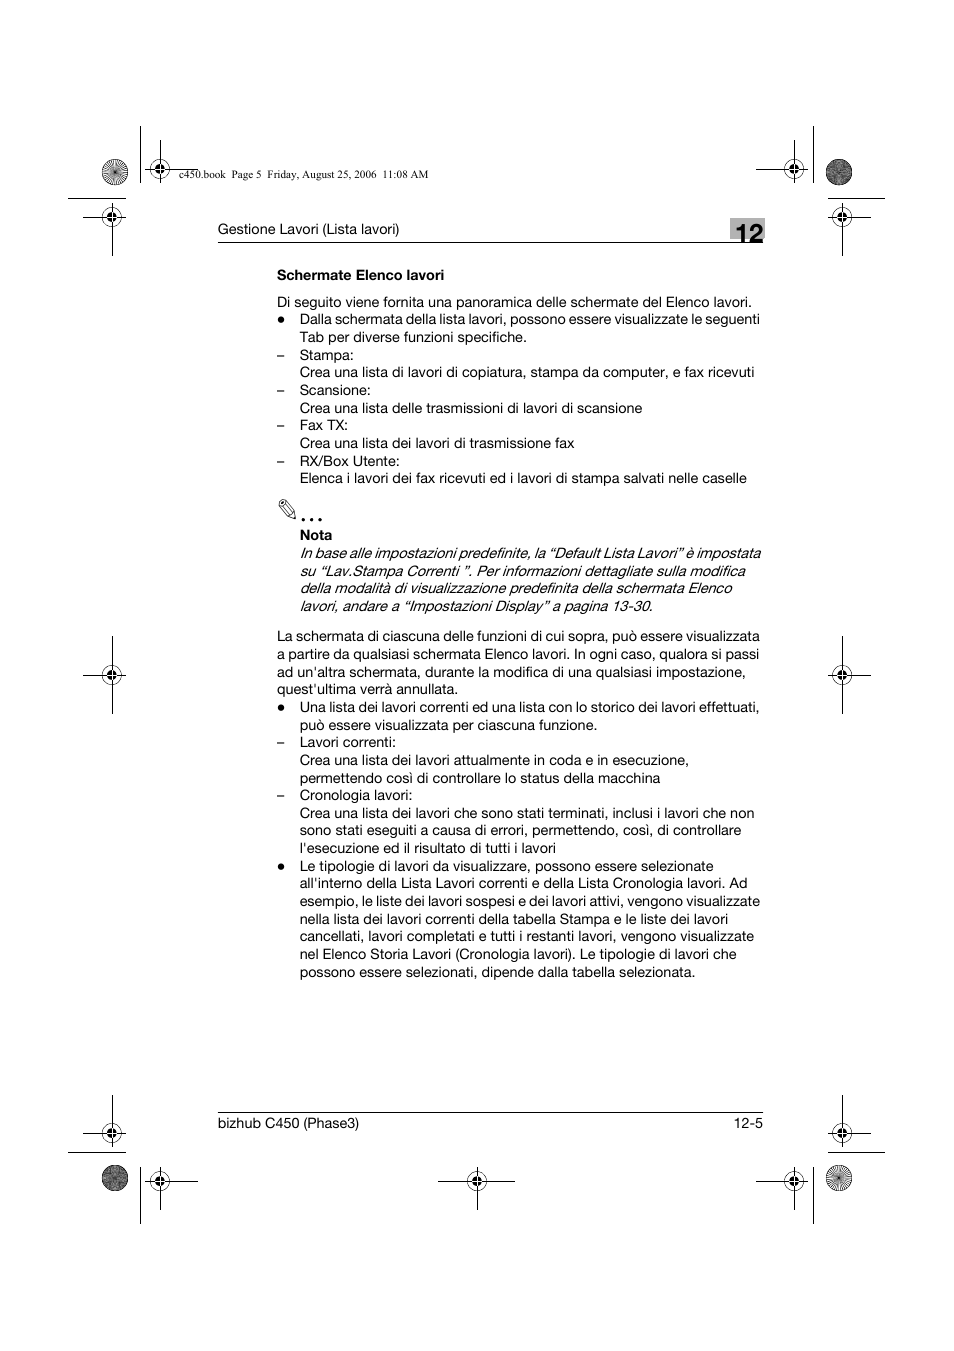 Schermate elenco lavori, Schermate elenco lavori -5 | Konica Minolta BIZHUB C450 Manuale d'uso | Pagina 543 / 708